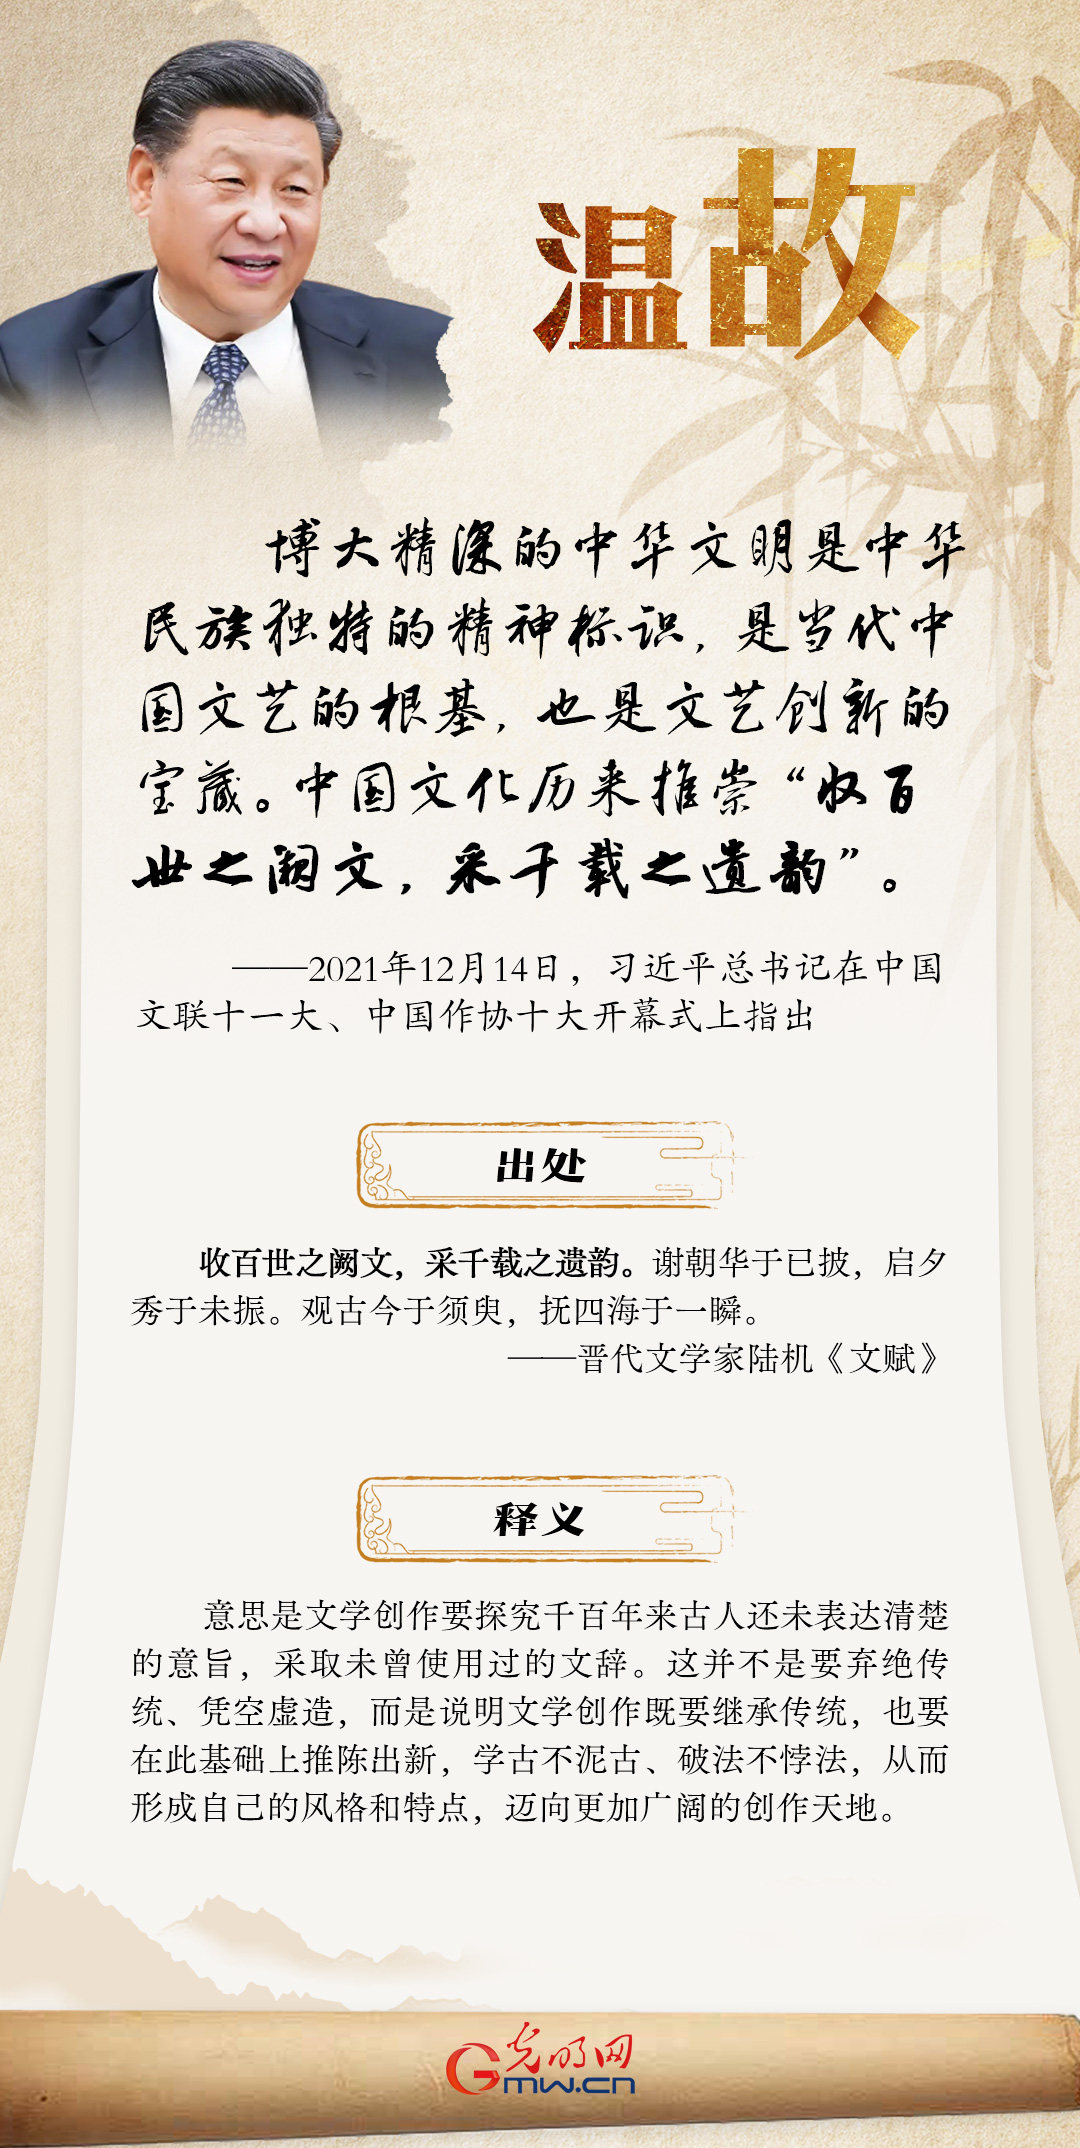 海报丨【温故】习近平总书记这样引用古语寄语广大文艺工作者